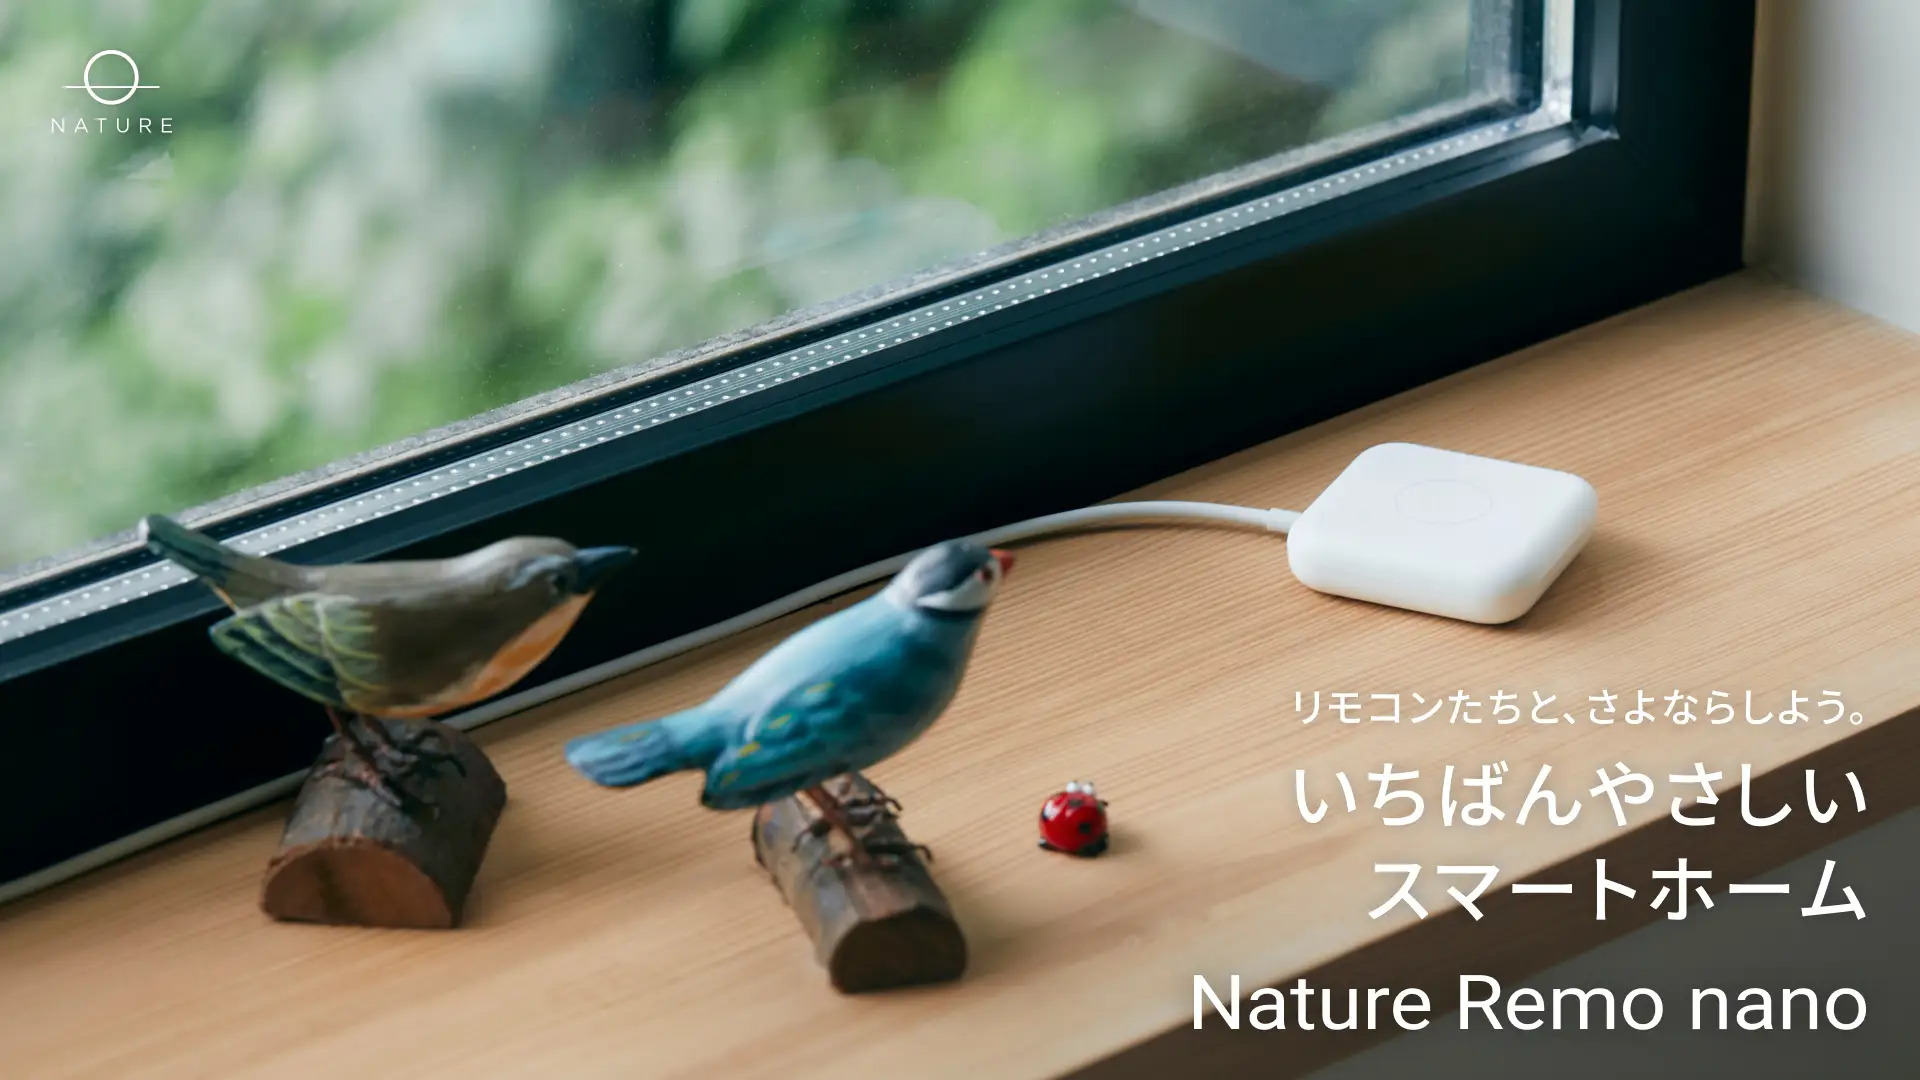 3980円のスマートリモコンNature Remo nano発売。Matter対応、スマート